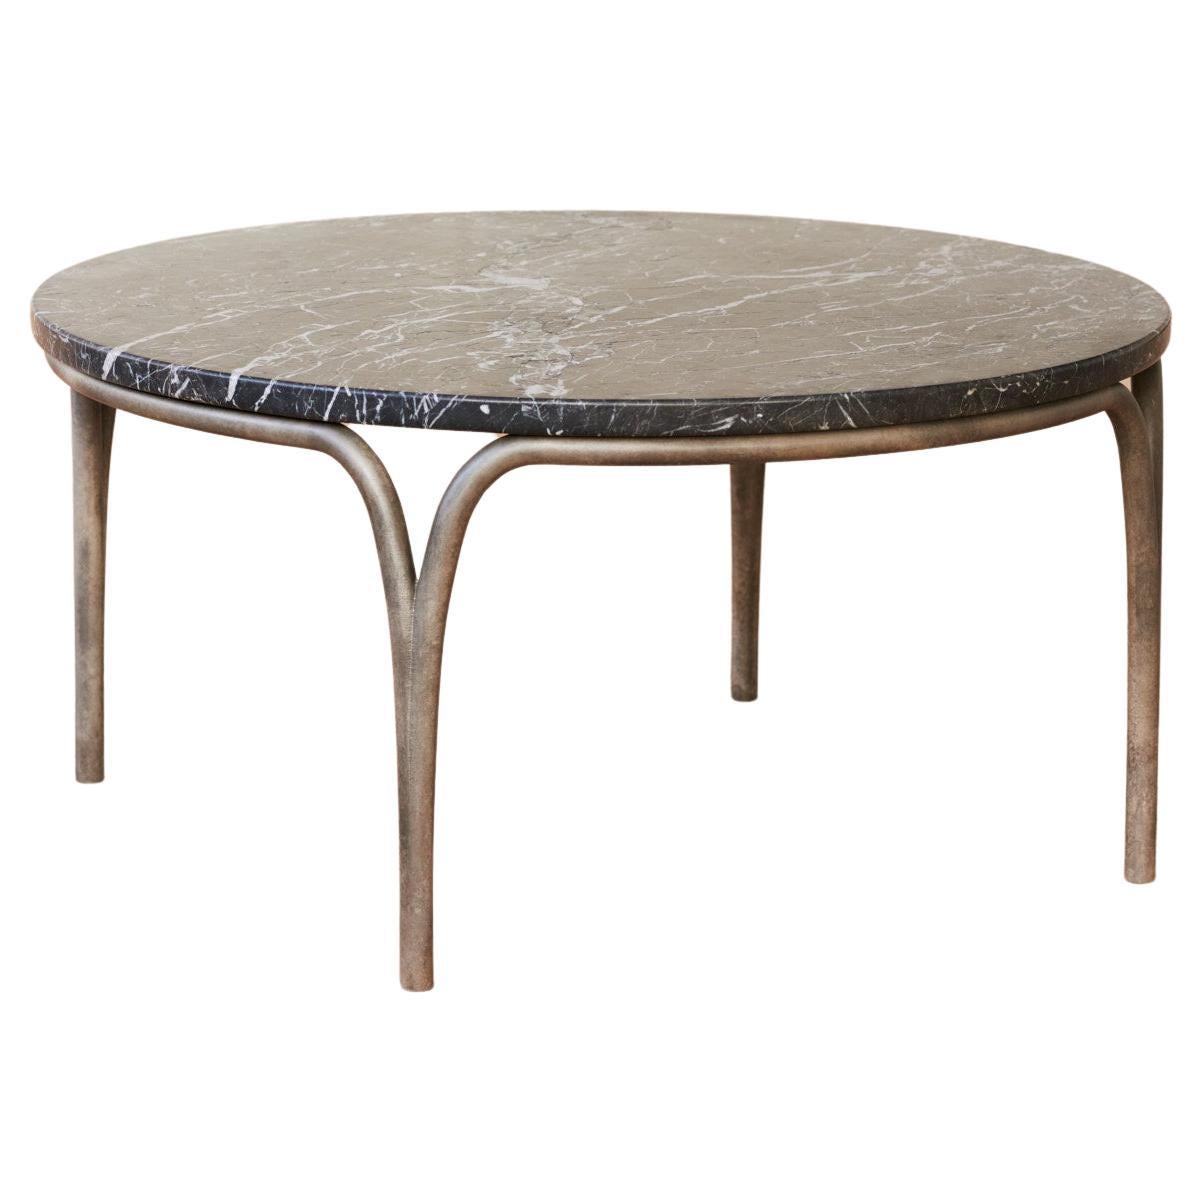 Table basse cirrus avec plateau de table en marbre en vente